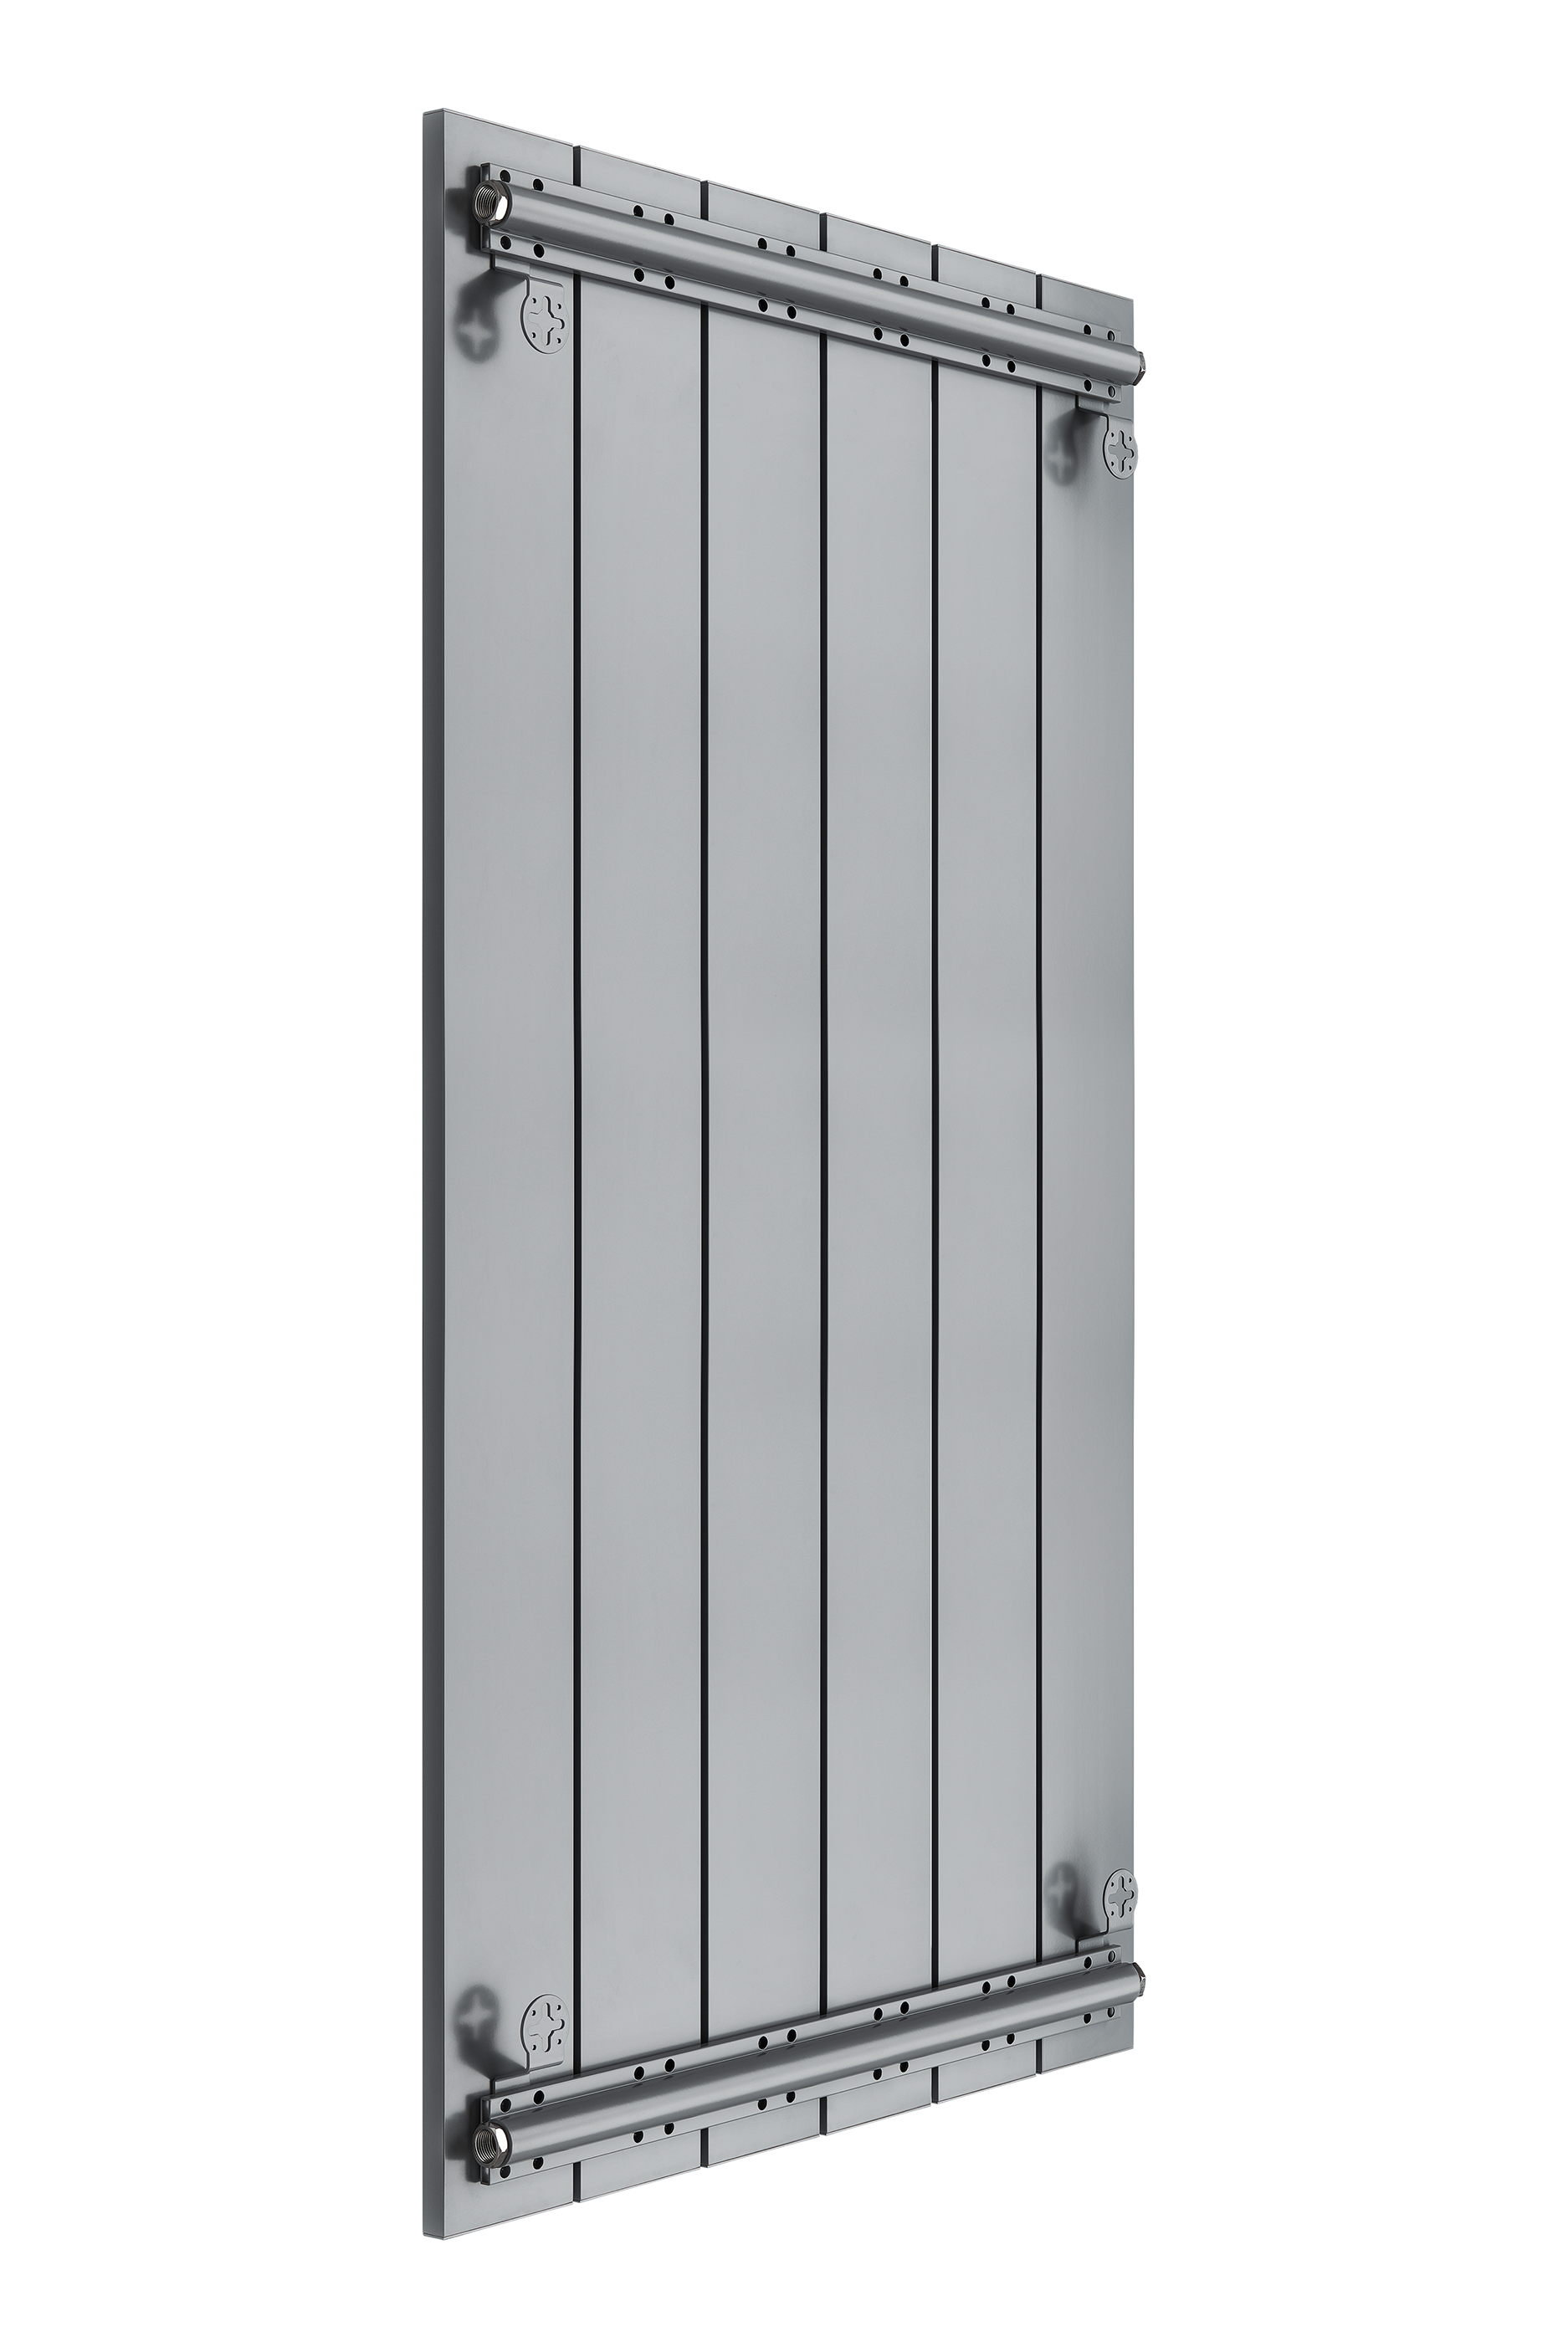 Секционный радиатор отопления Mivarmo 6 секций 200 см. серебристый матовый